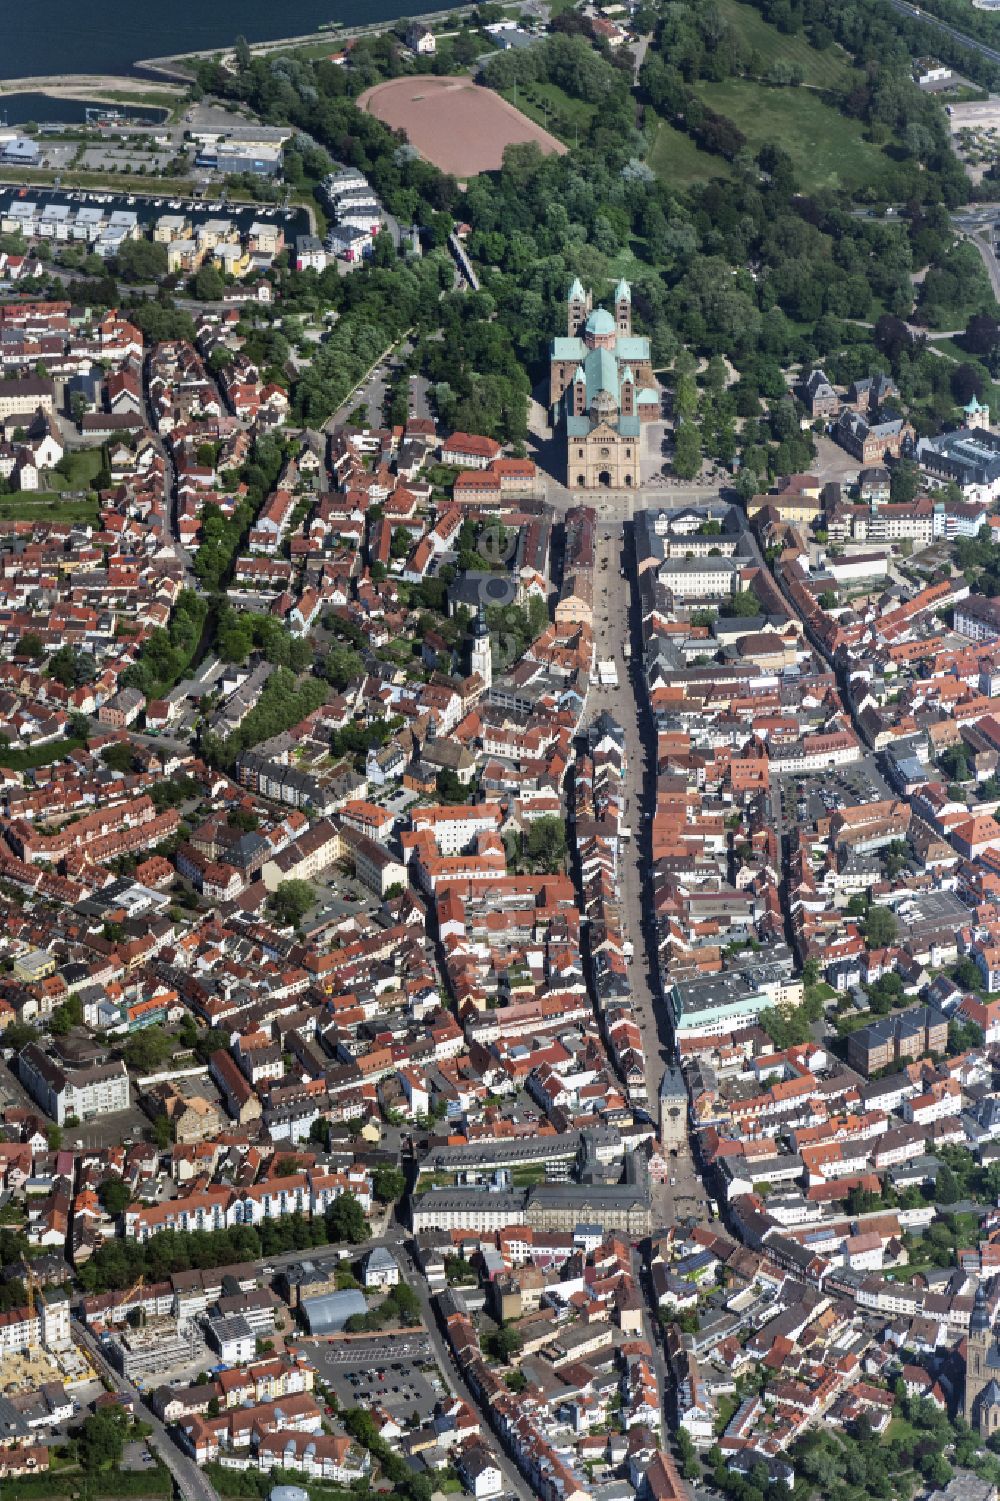 Dudenhofen von oben - Stadtzentrum im Innenstadtbereich in Dudenhofen im Bundesland Rheinland-Pfalz, Deutschland